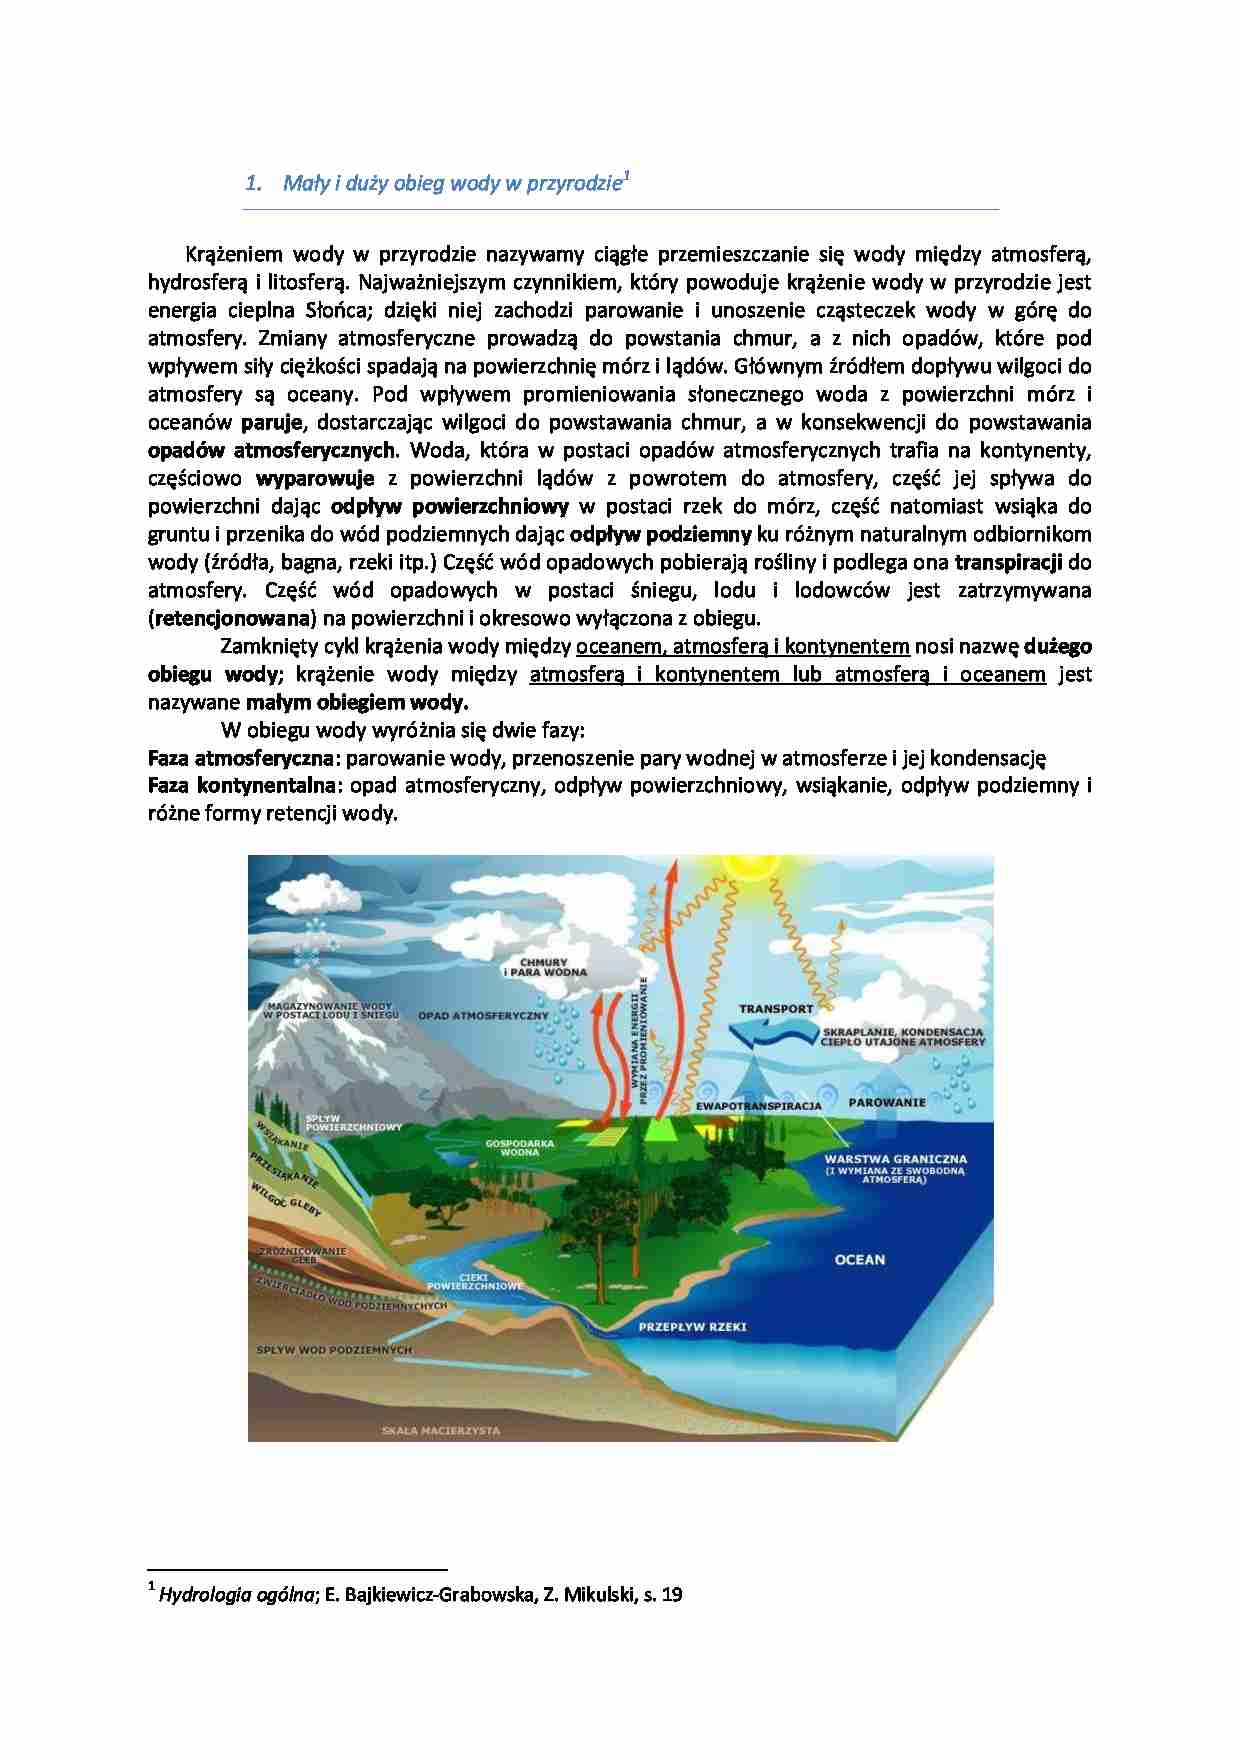 Mały i duży obieg wody w przyrodzie-opracowanie - Faza atmosferyczna - strona 1